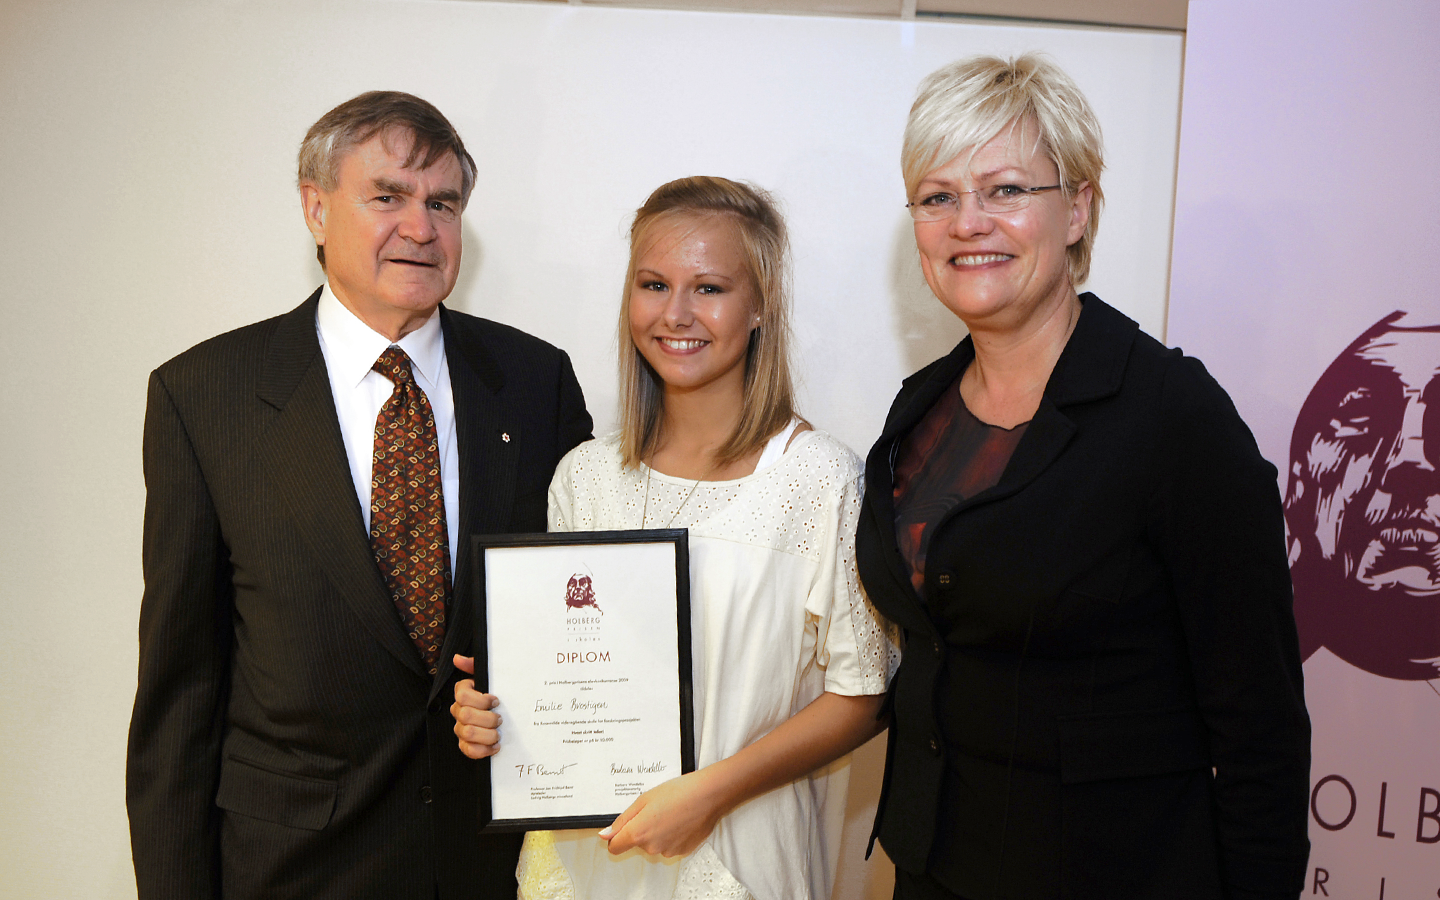 Annenprisvinner av Holbergprisen i skolen 2009. Foto: Marit Hommedal / Scanpix